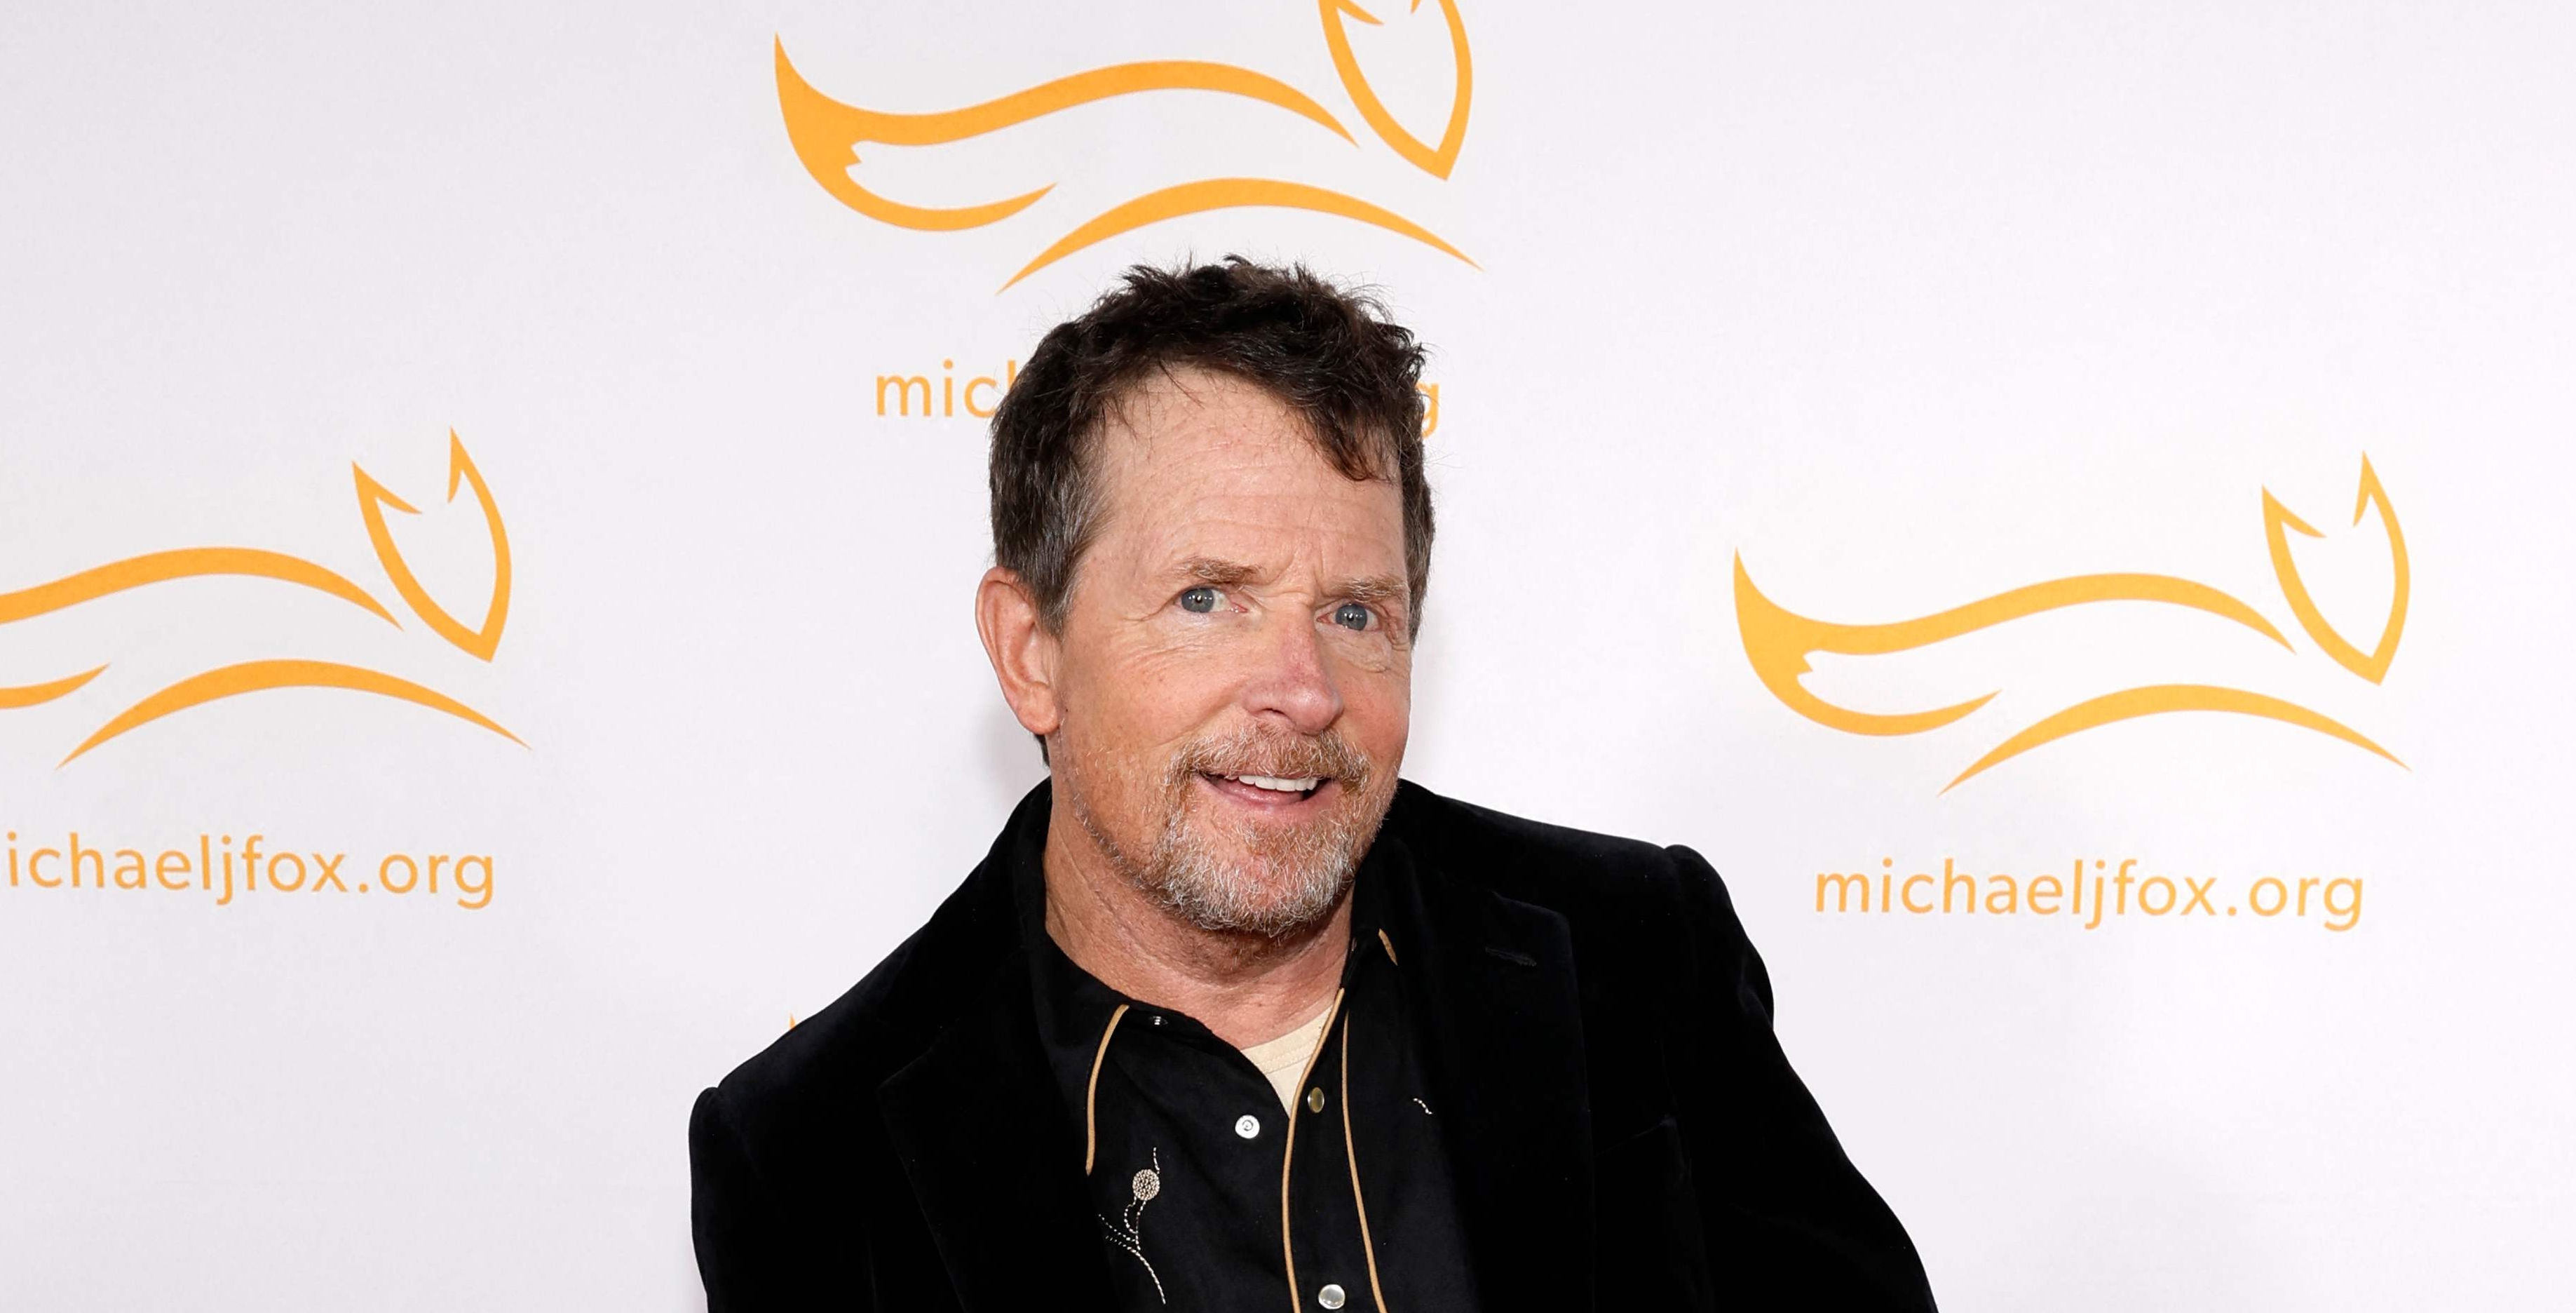 Michael J. Fox afirma que vivir con párkinson es "cada vez más duro"